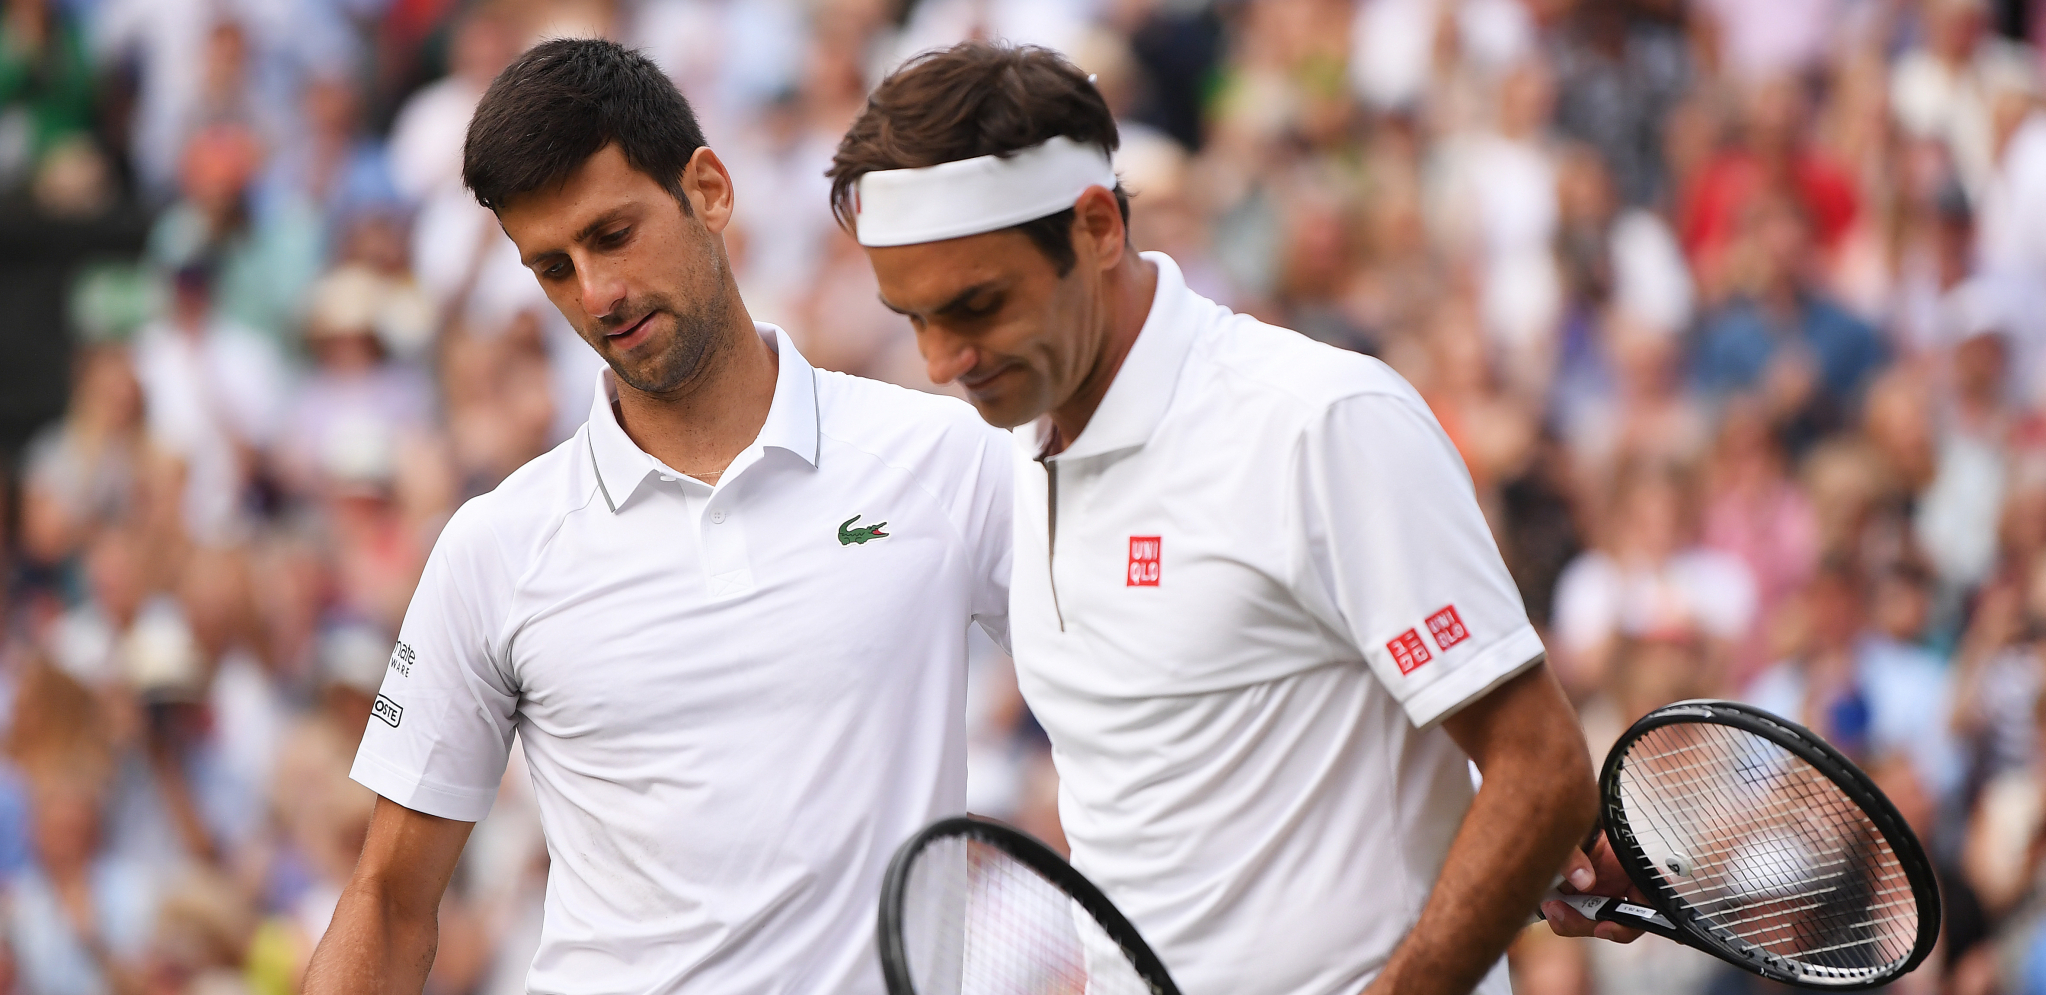 RODŽERE, IMAŠ LI OBRAZA? Federer pokazao koliko mrzi Đokovića, dokaz je konačno isplivao (FOTO)